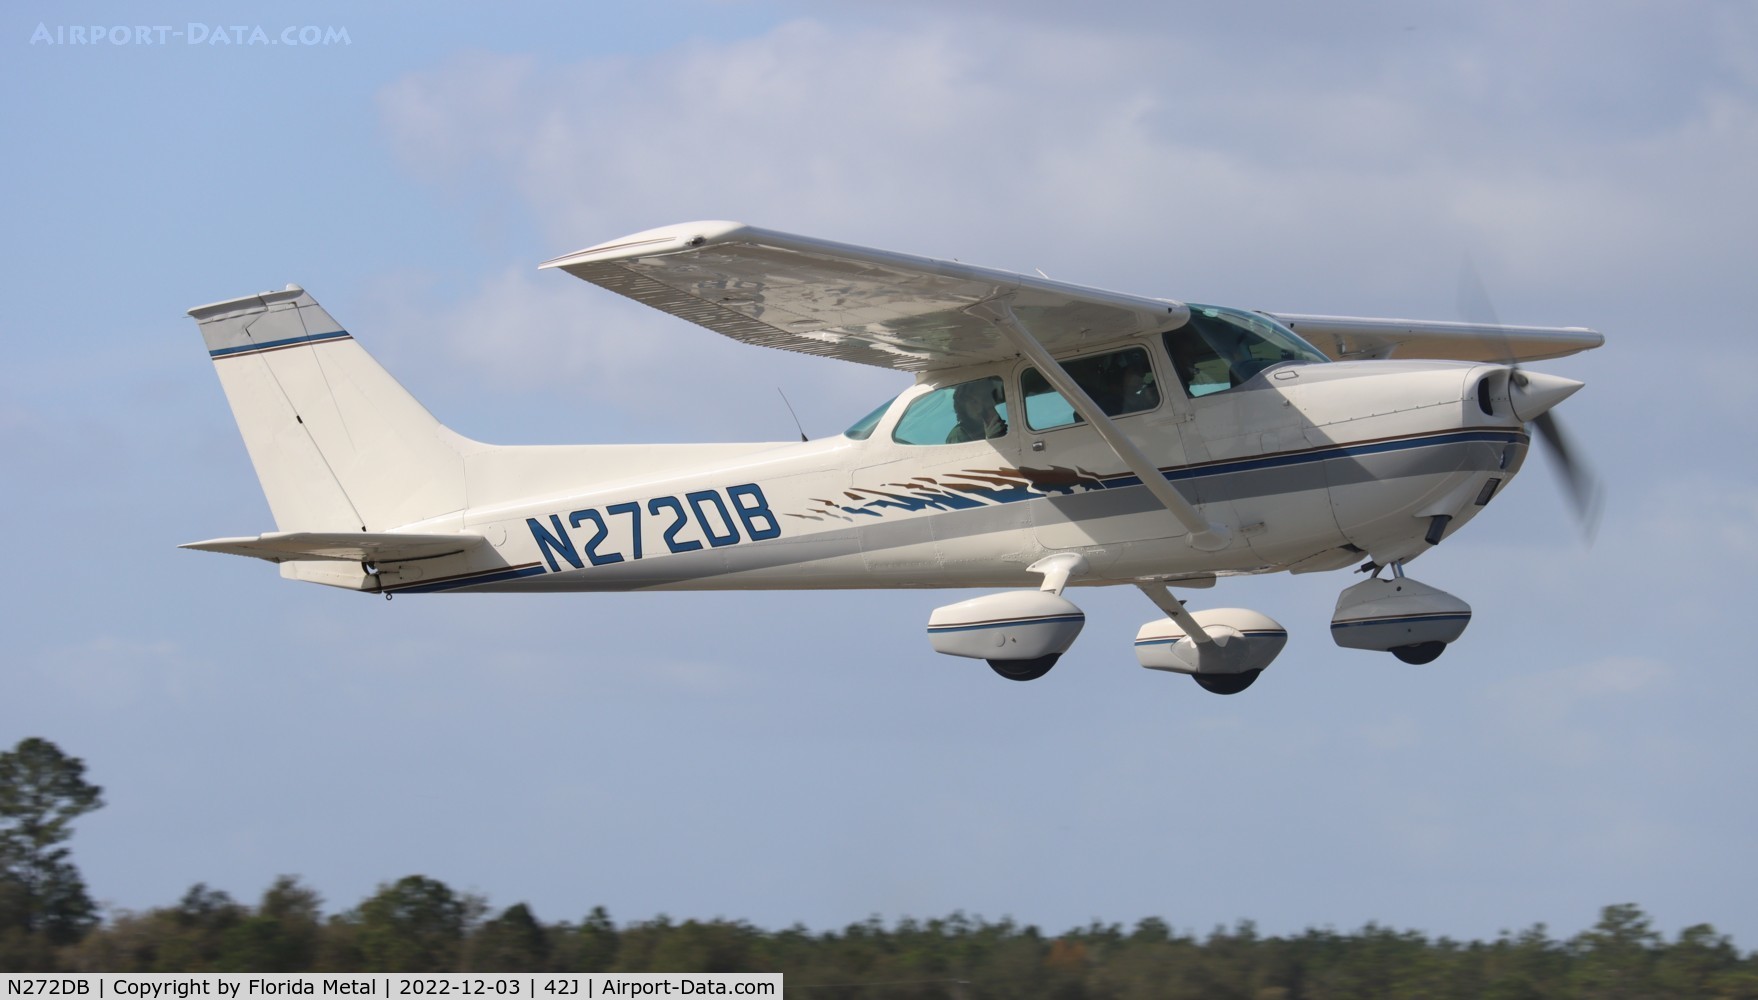 N272DB, 1973 Cessna 172M C/N 17261821, Keystone 80th